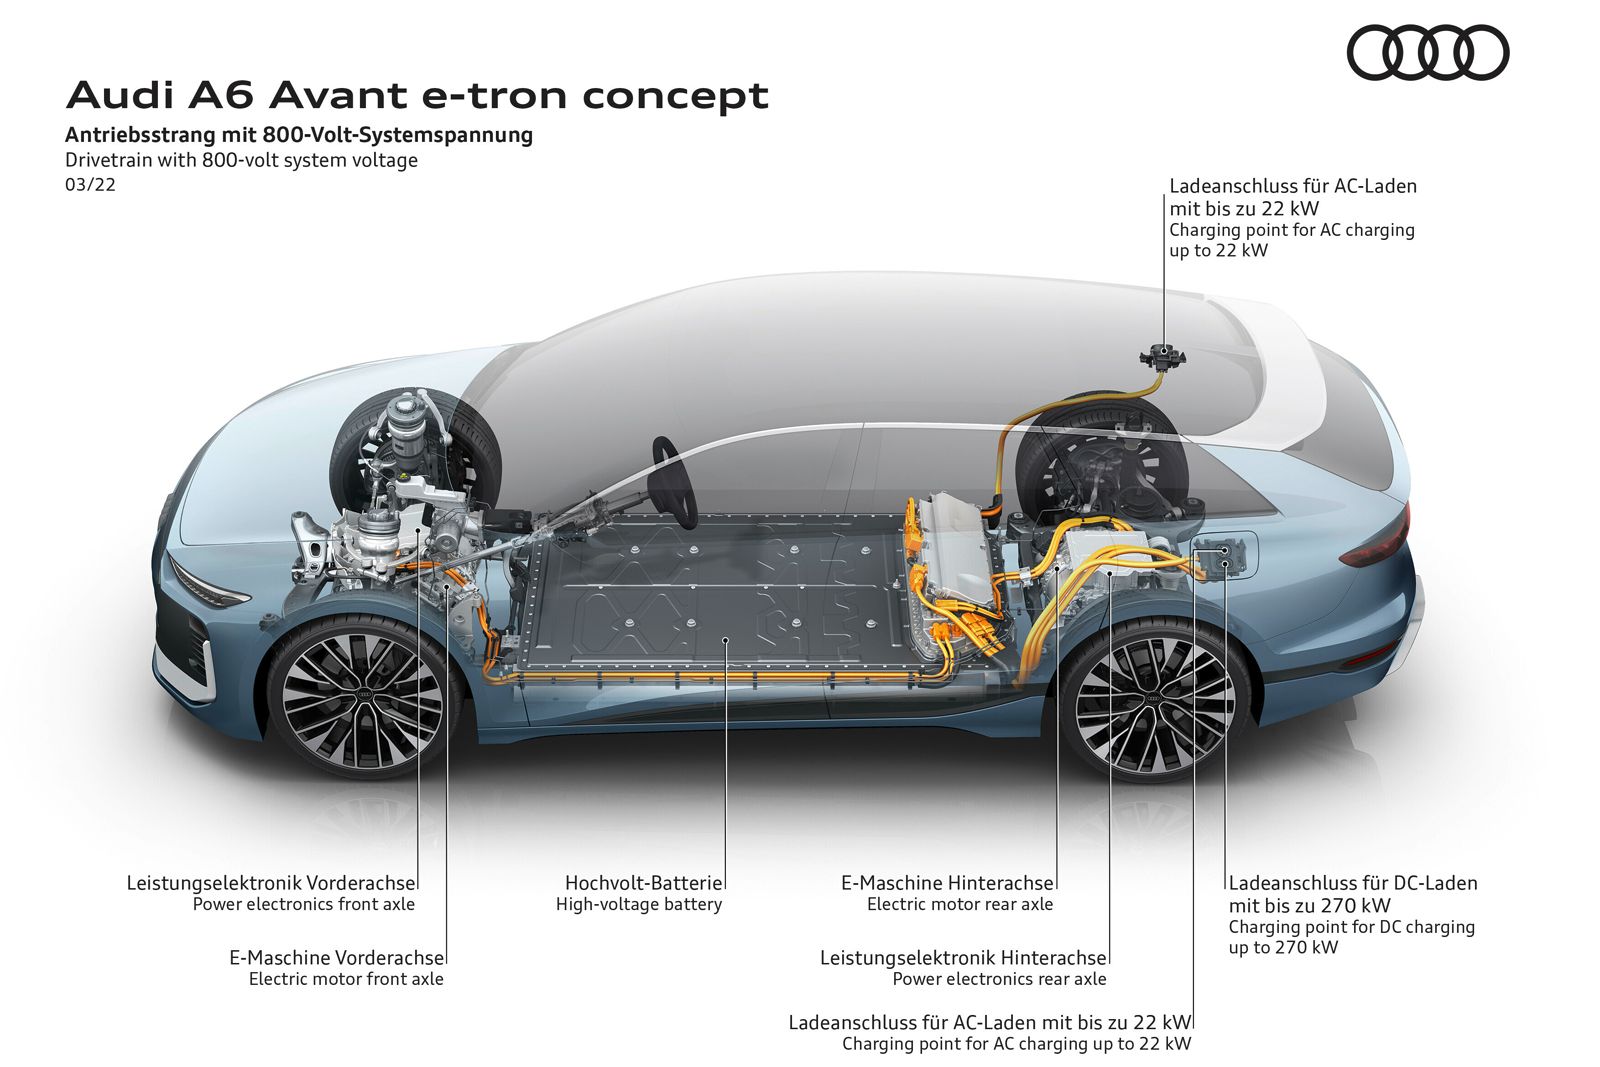 Audi A6 Avant e-tron concept photo 8